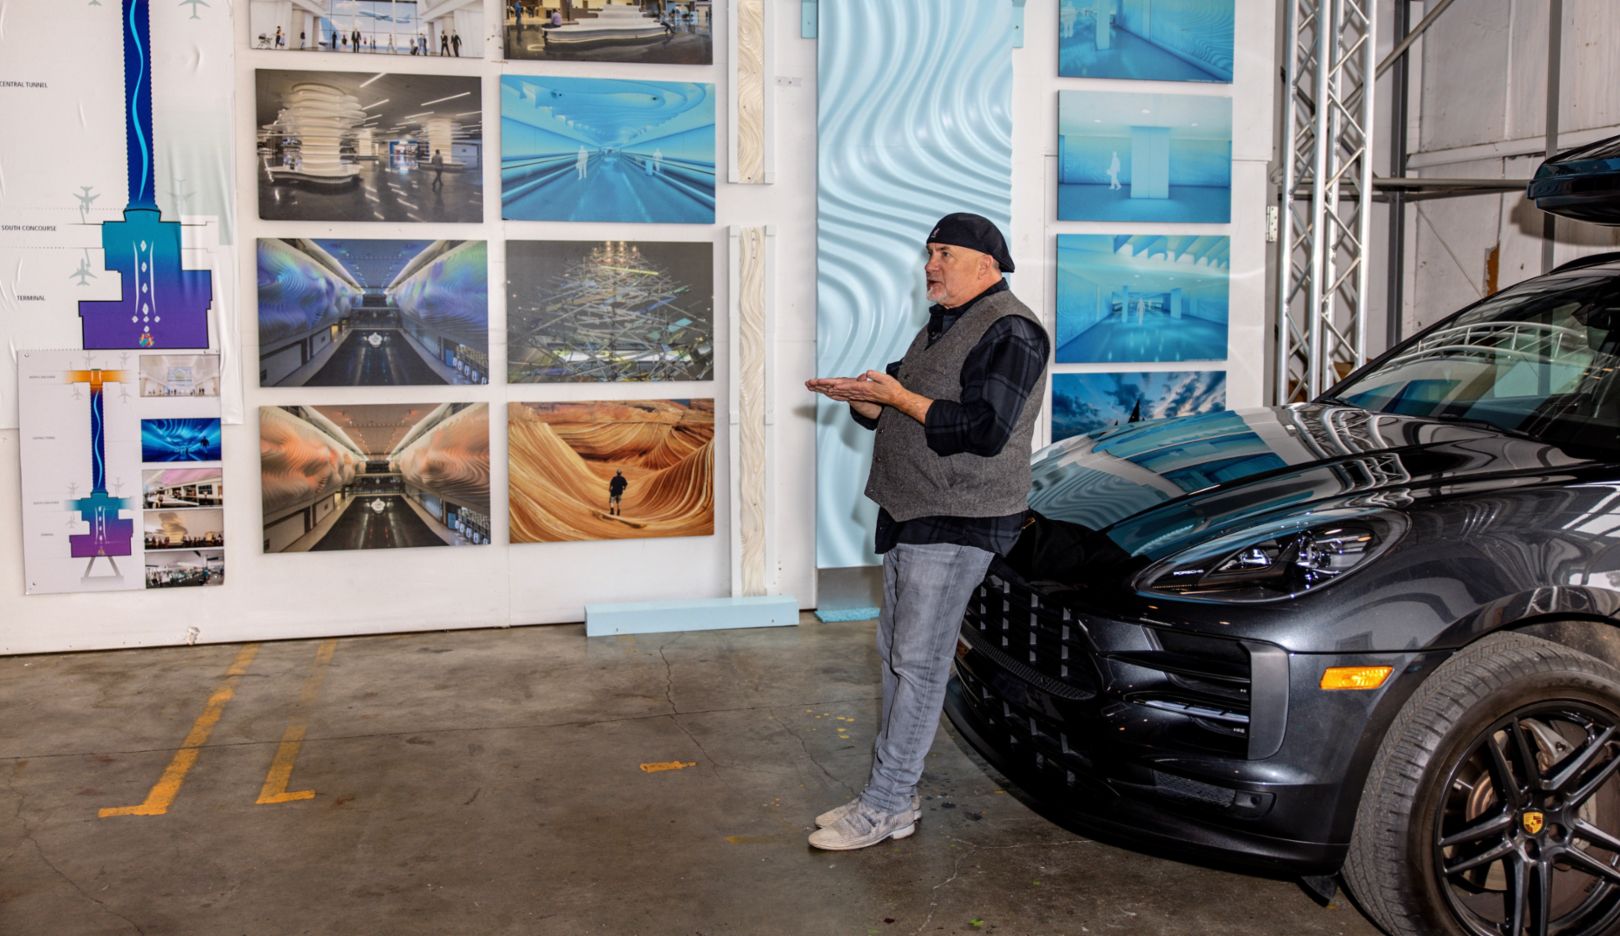 Parkplatz im Studio: Gordon Huether mit seinem Porsche Macan S vor Aufnahmen seiner Werke in Napa, Kalifornien, USA.